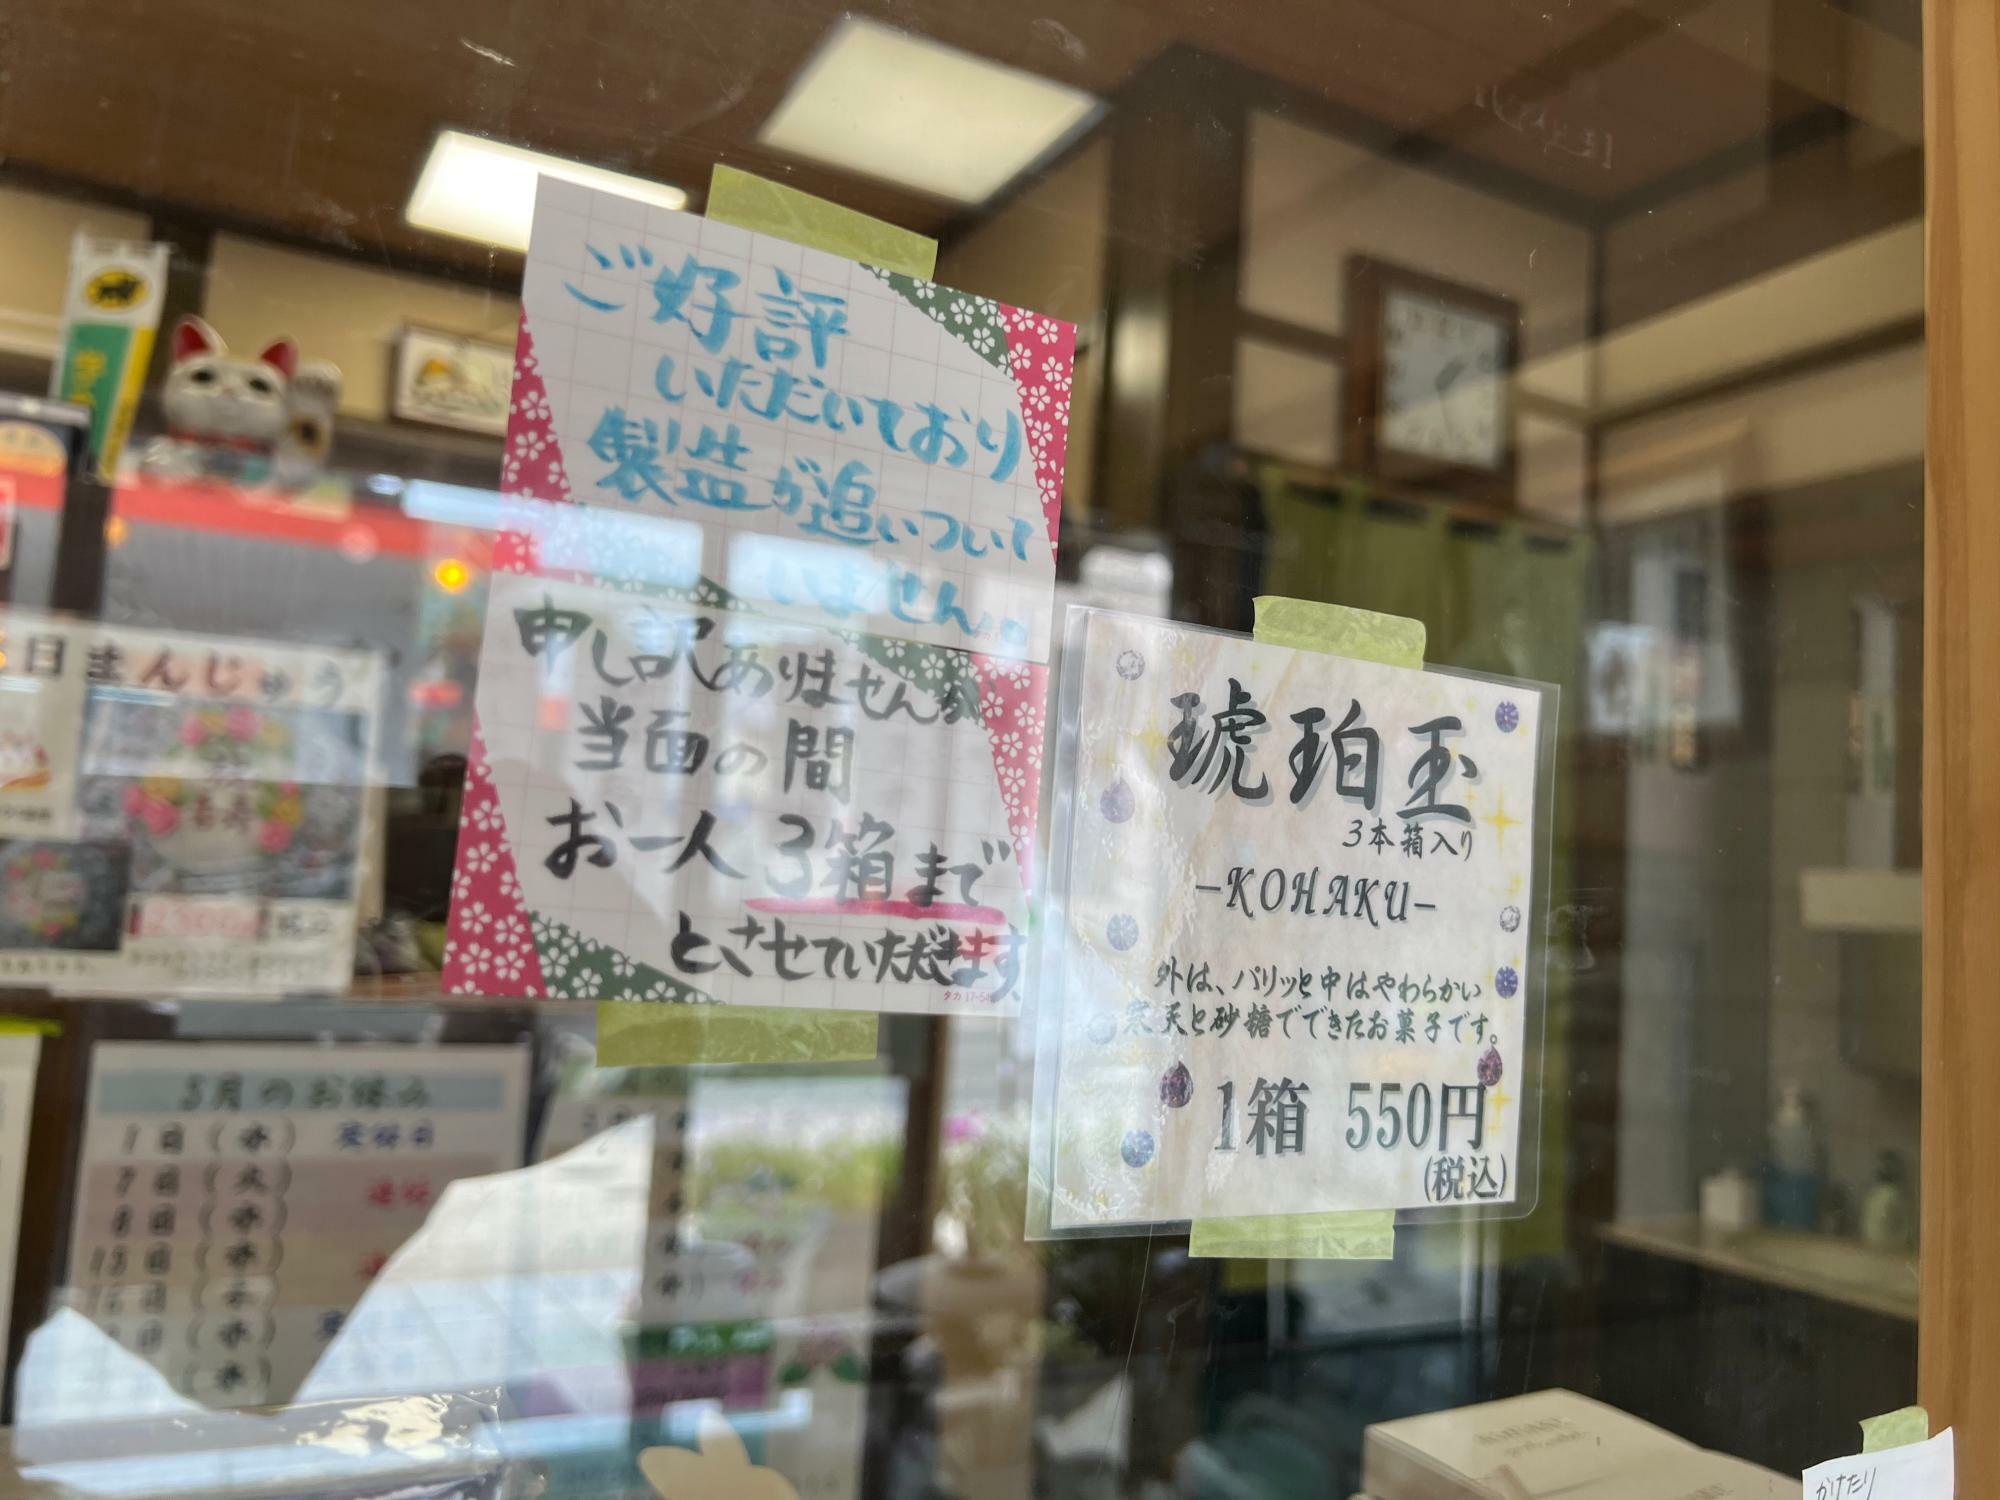 井口製菓舗の「琥珀玉-KOHAKU-」